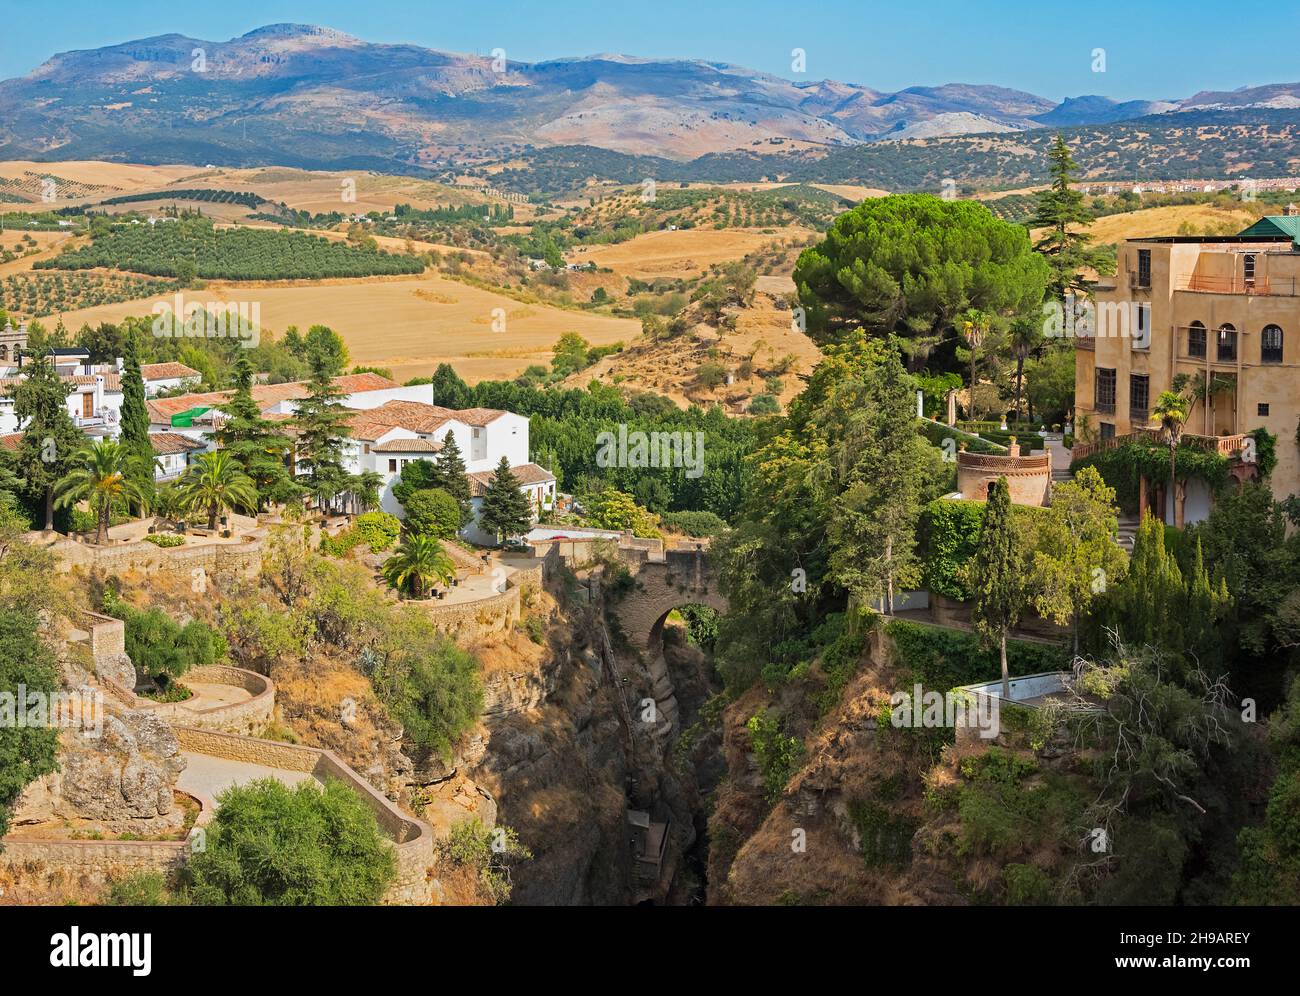 Houses and olive farm, Ronda, Malaga Province, Andalusia Autonomous Community, Spain Stock Photo